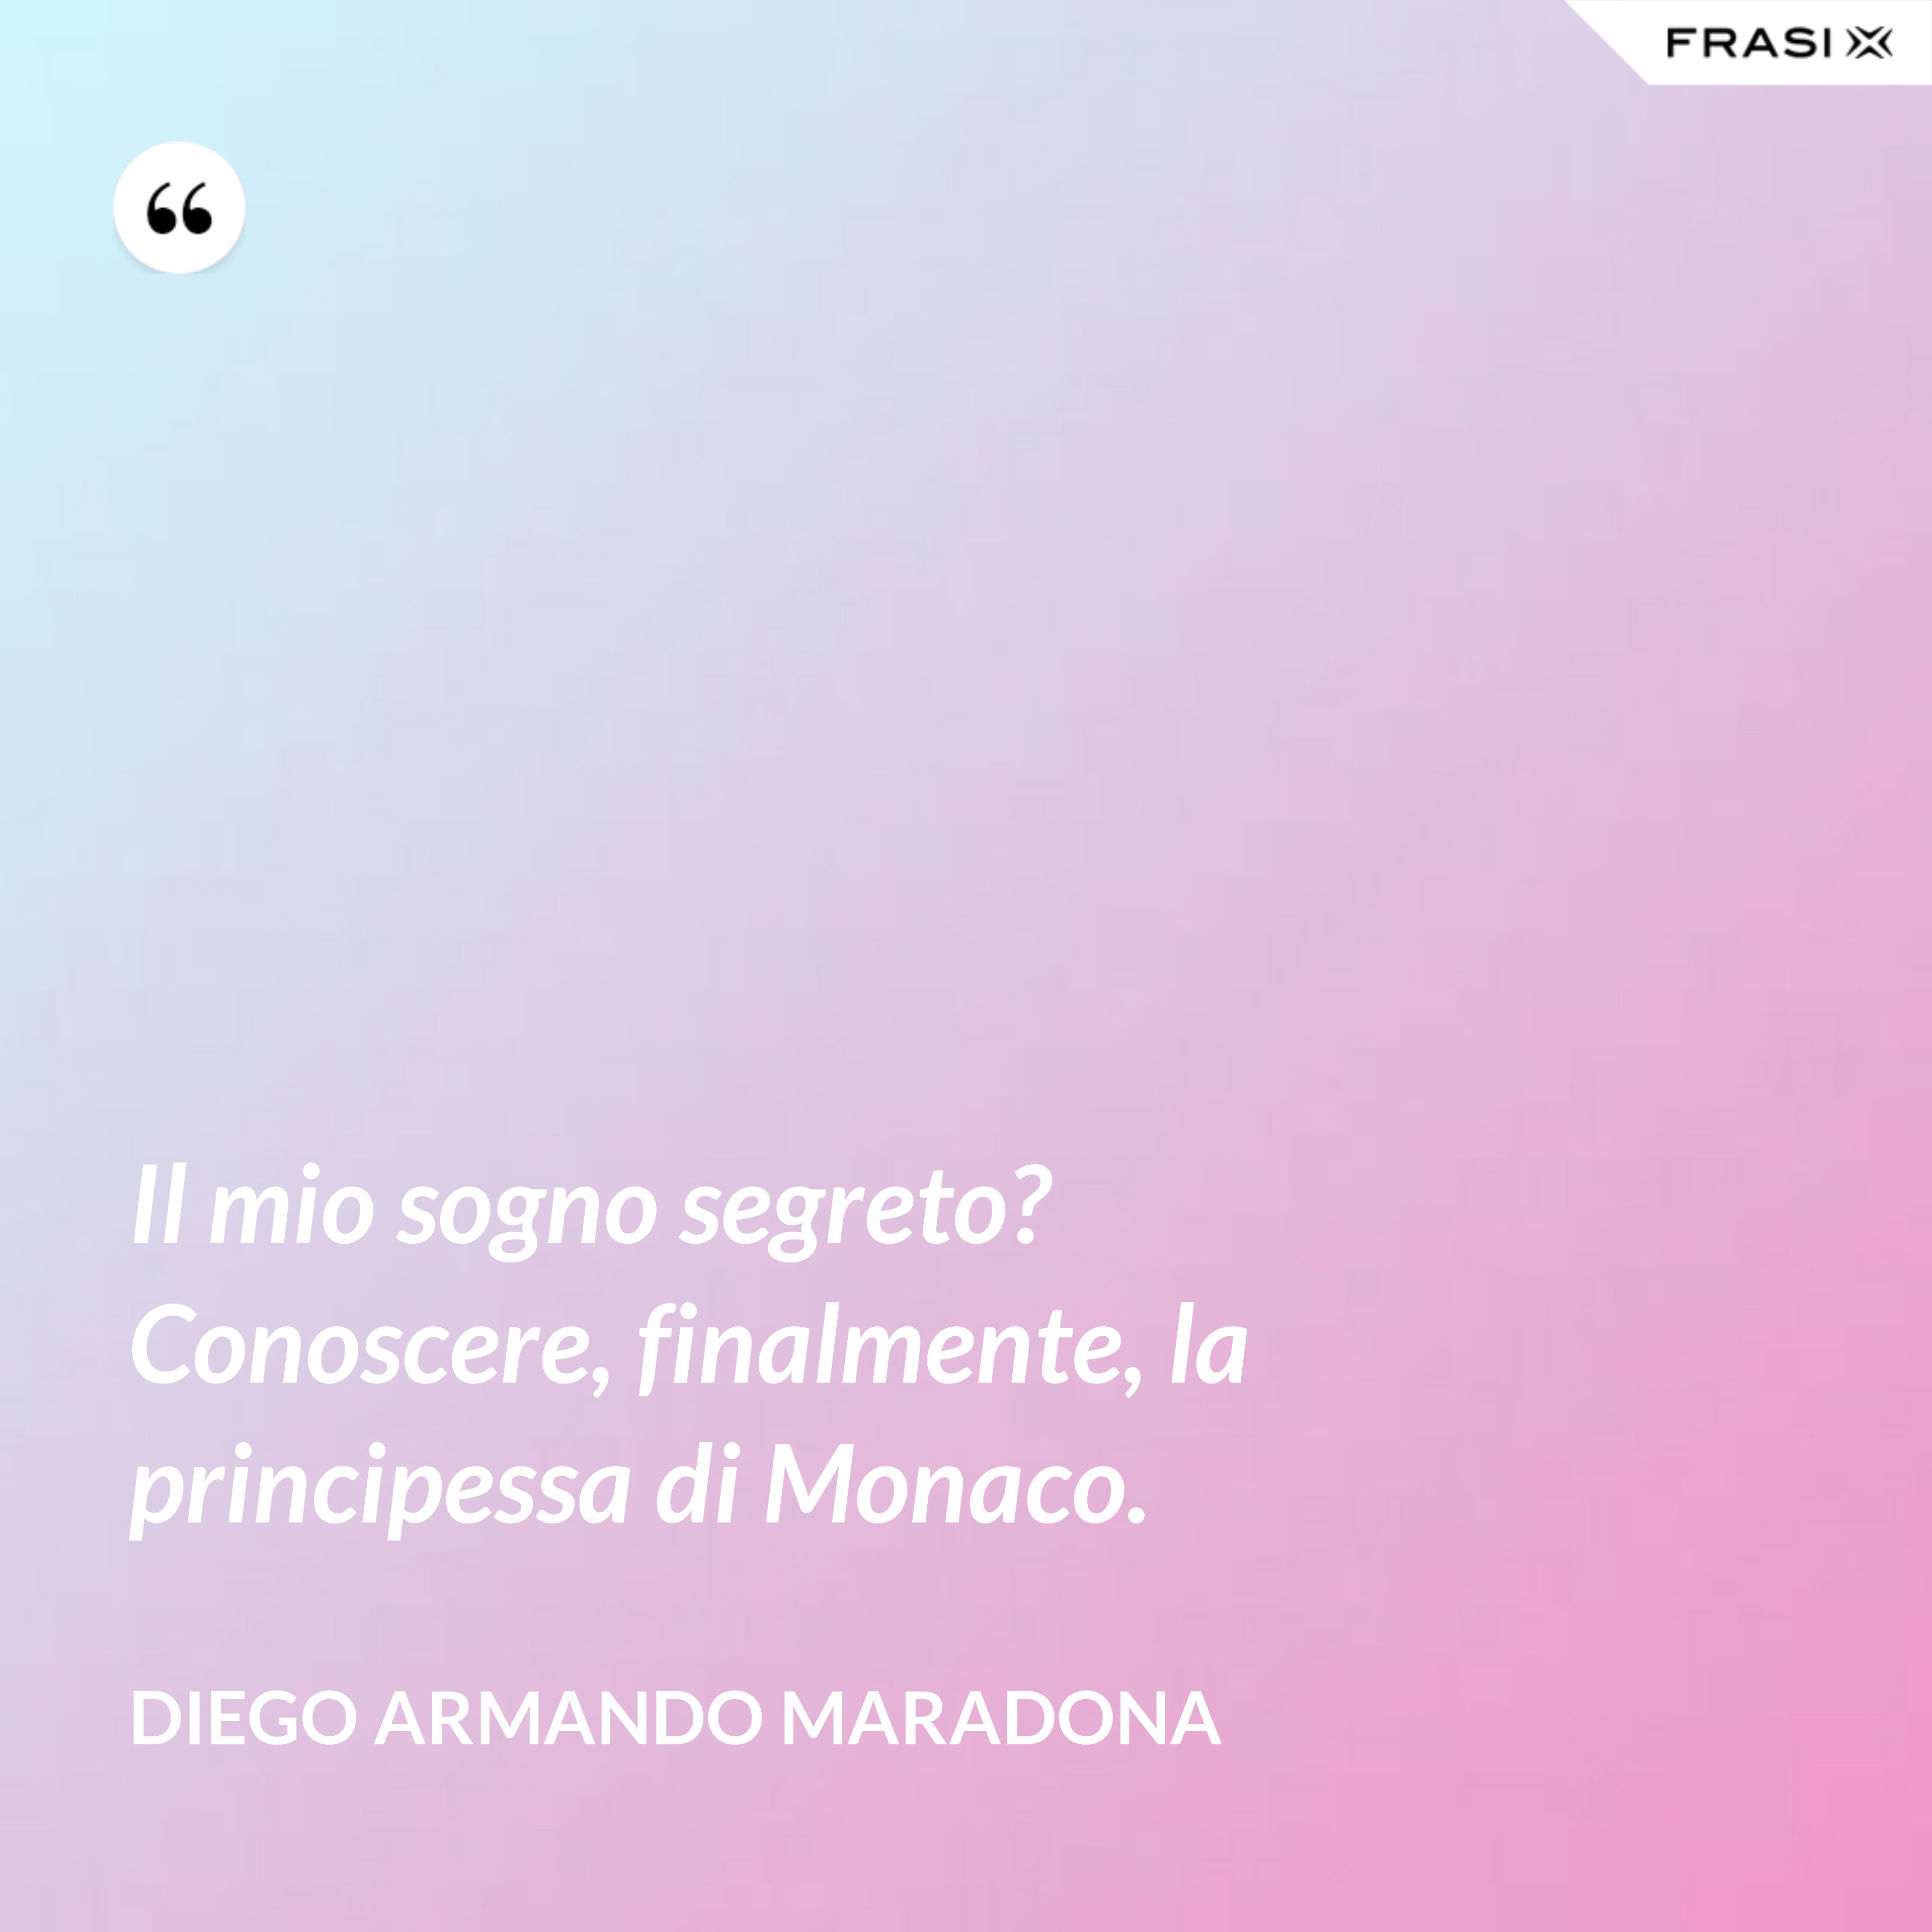 Il mio sogno segreto? Conoscere, finalmente, la principessa di Monaco. - Diego Armando Maradona